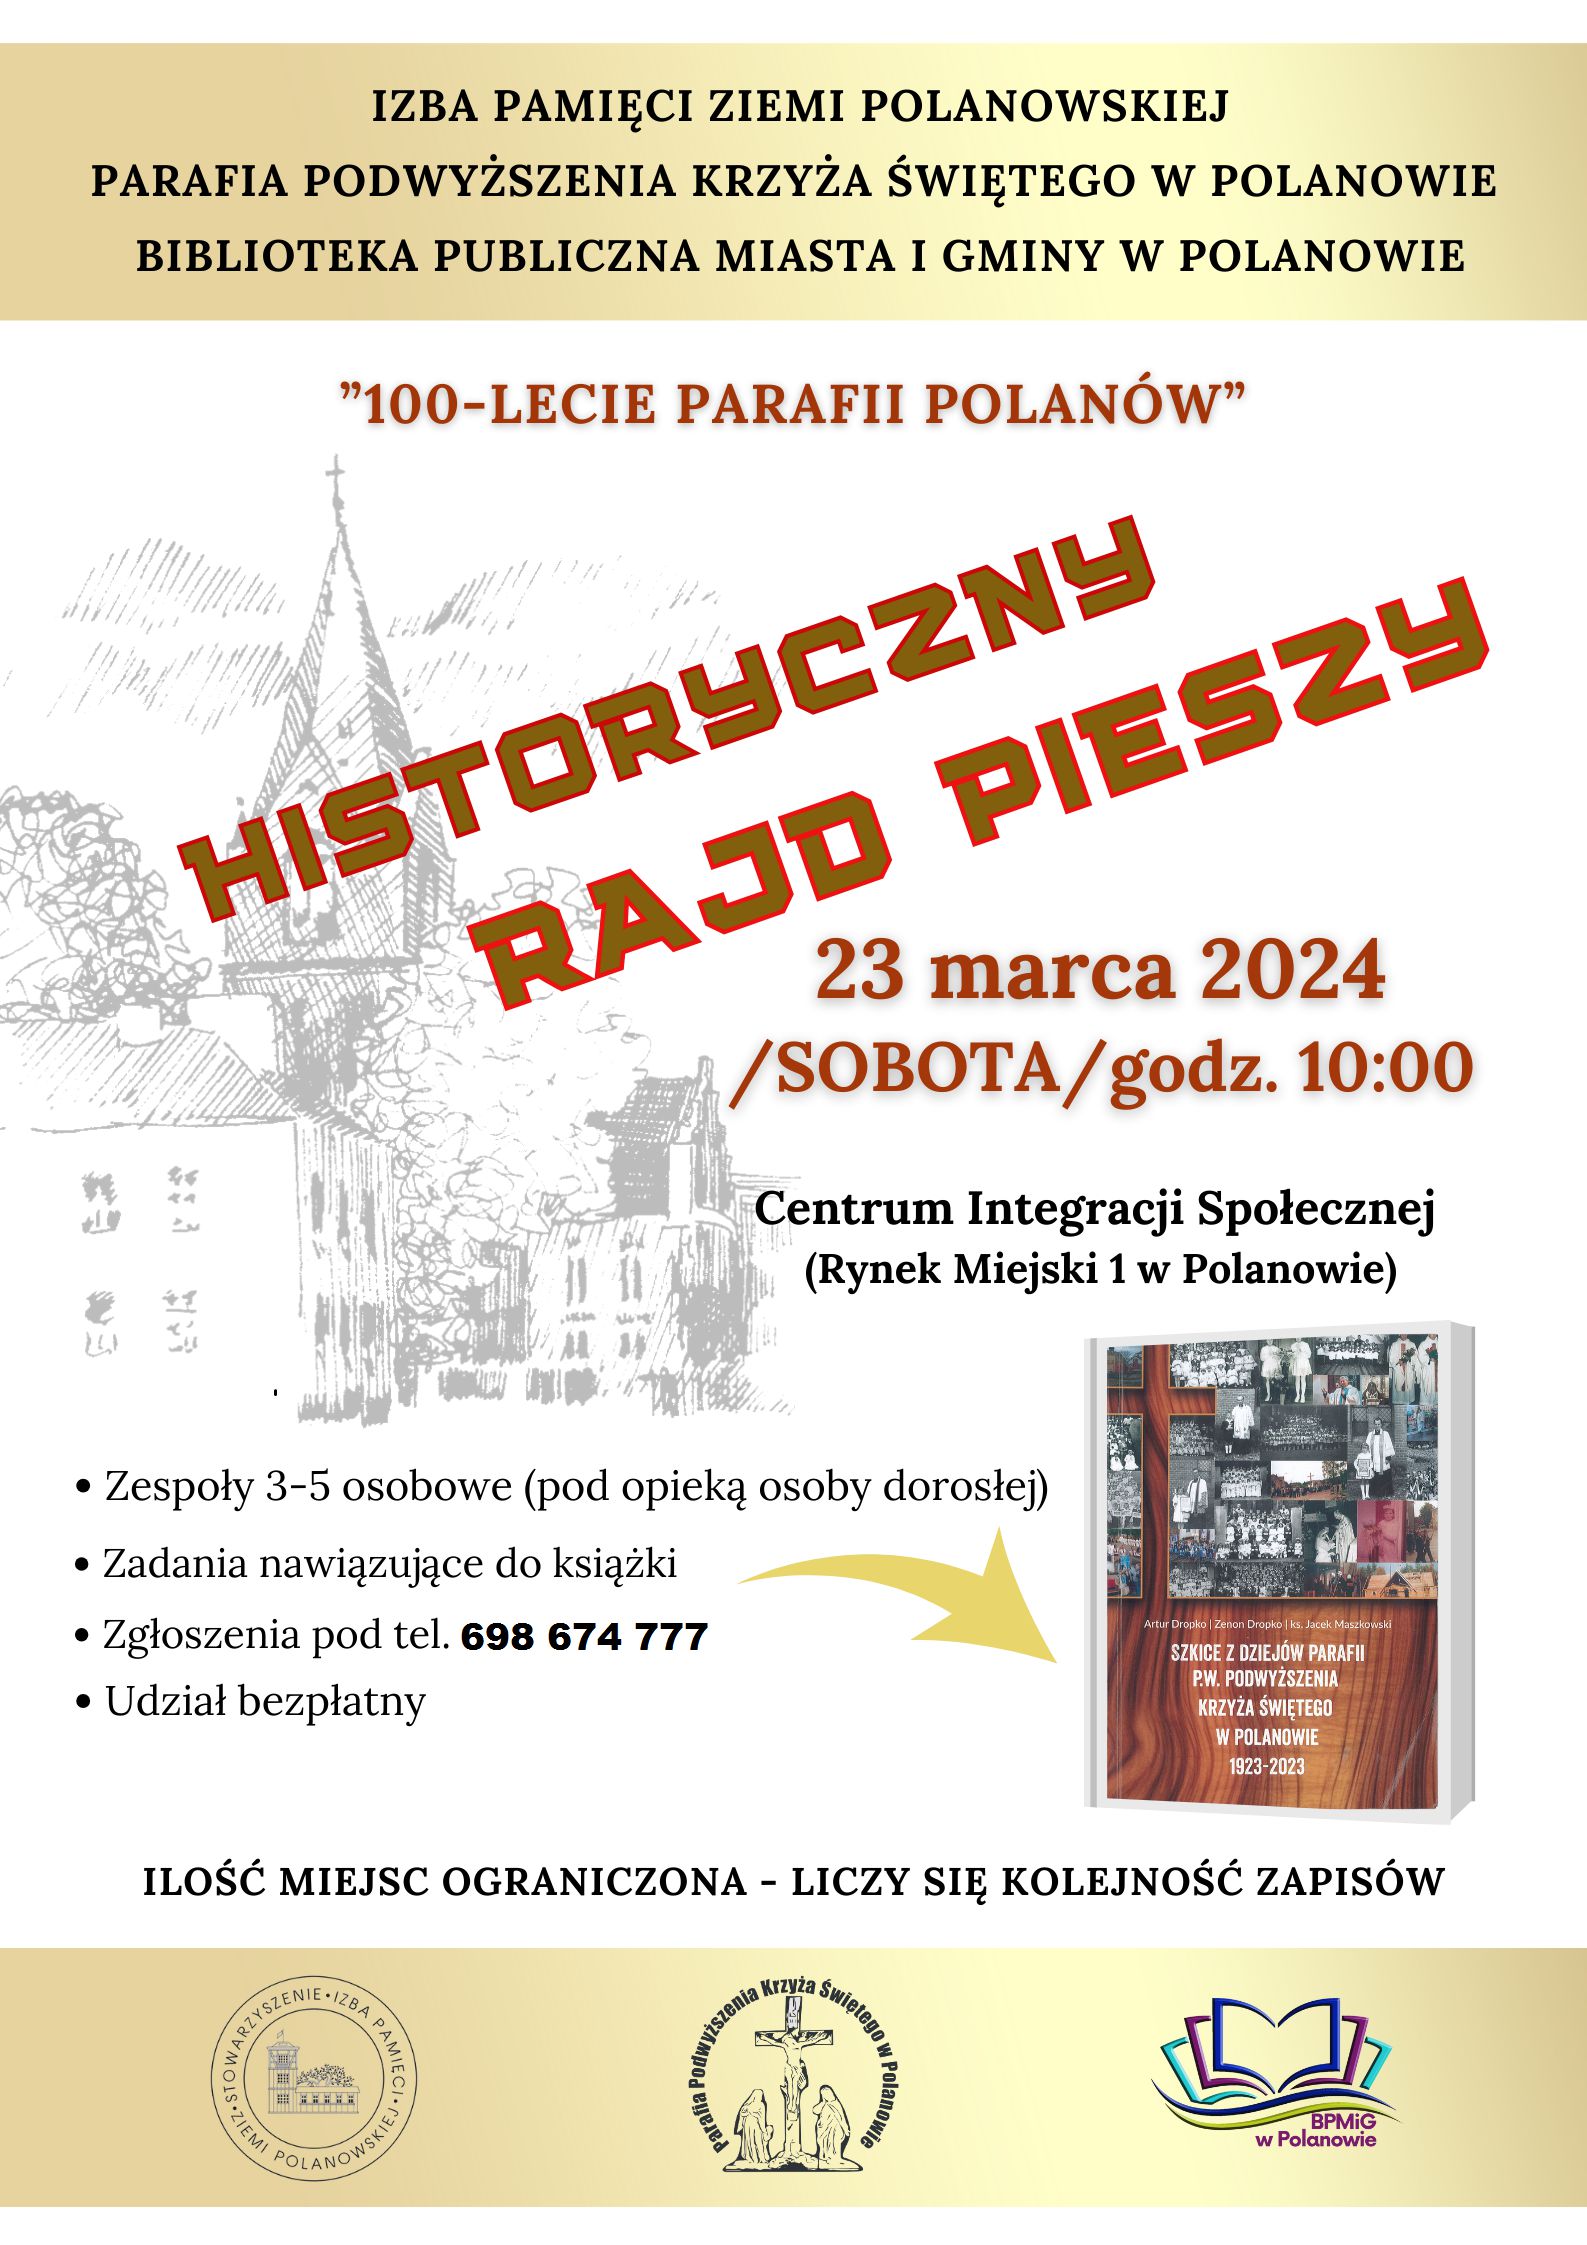 Plakat z zaproszeniem na historyczny rajd pieszy w Polanowie 23 marca 2024